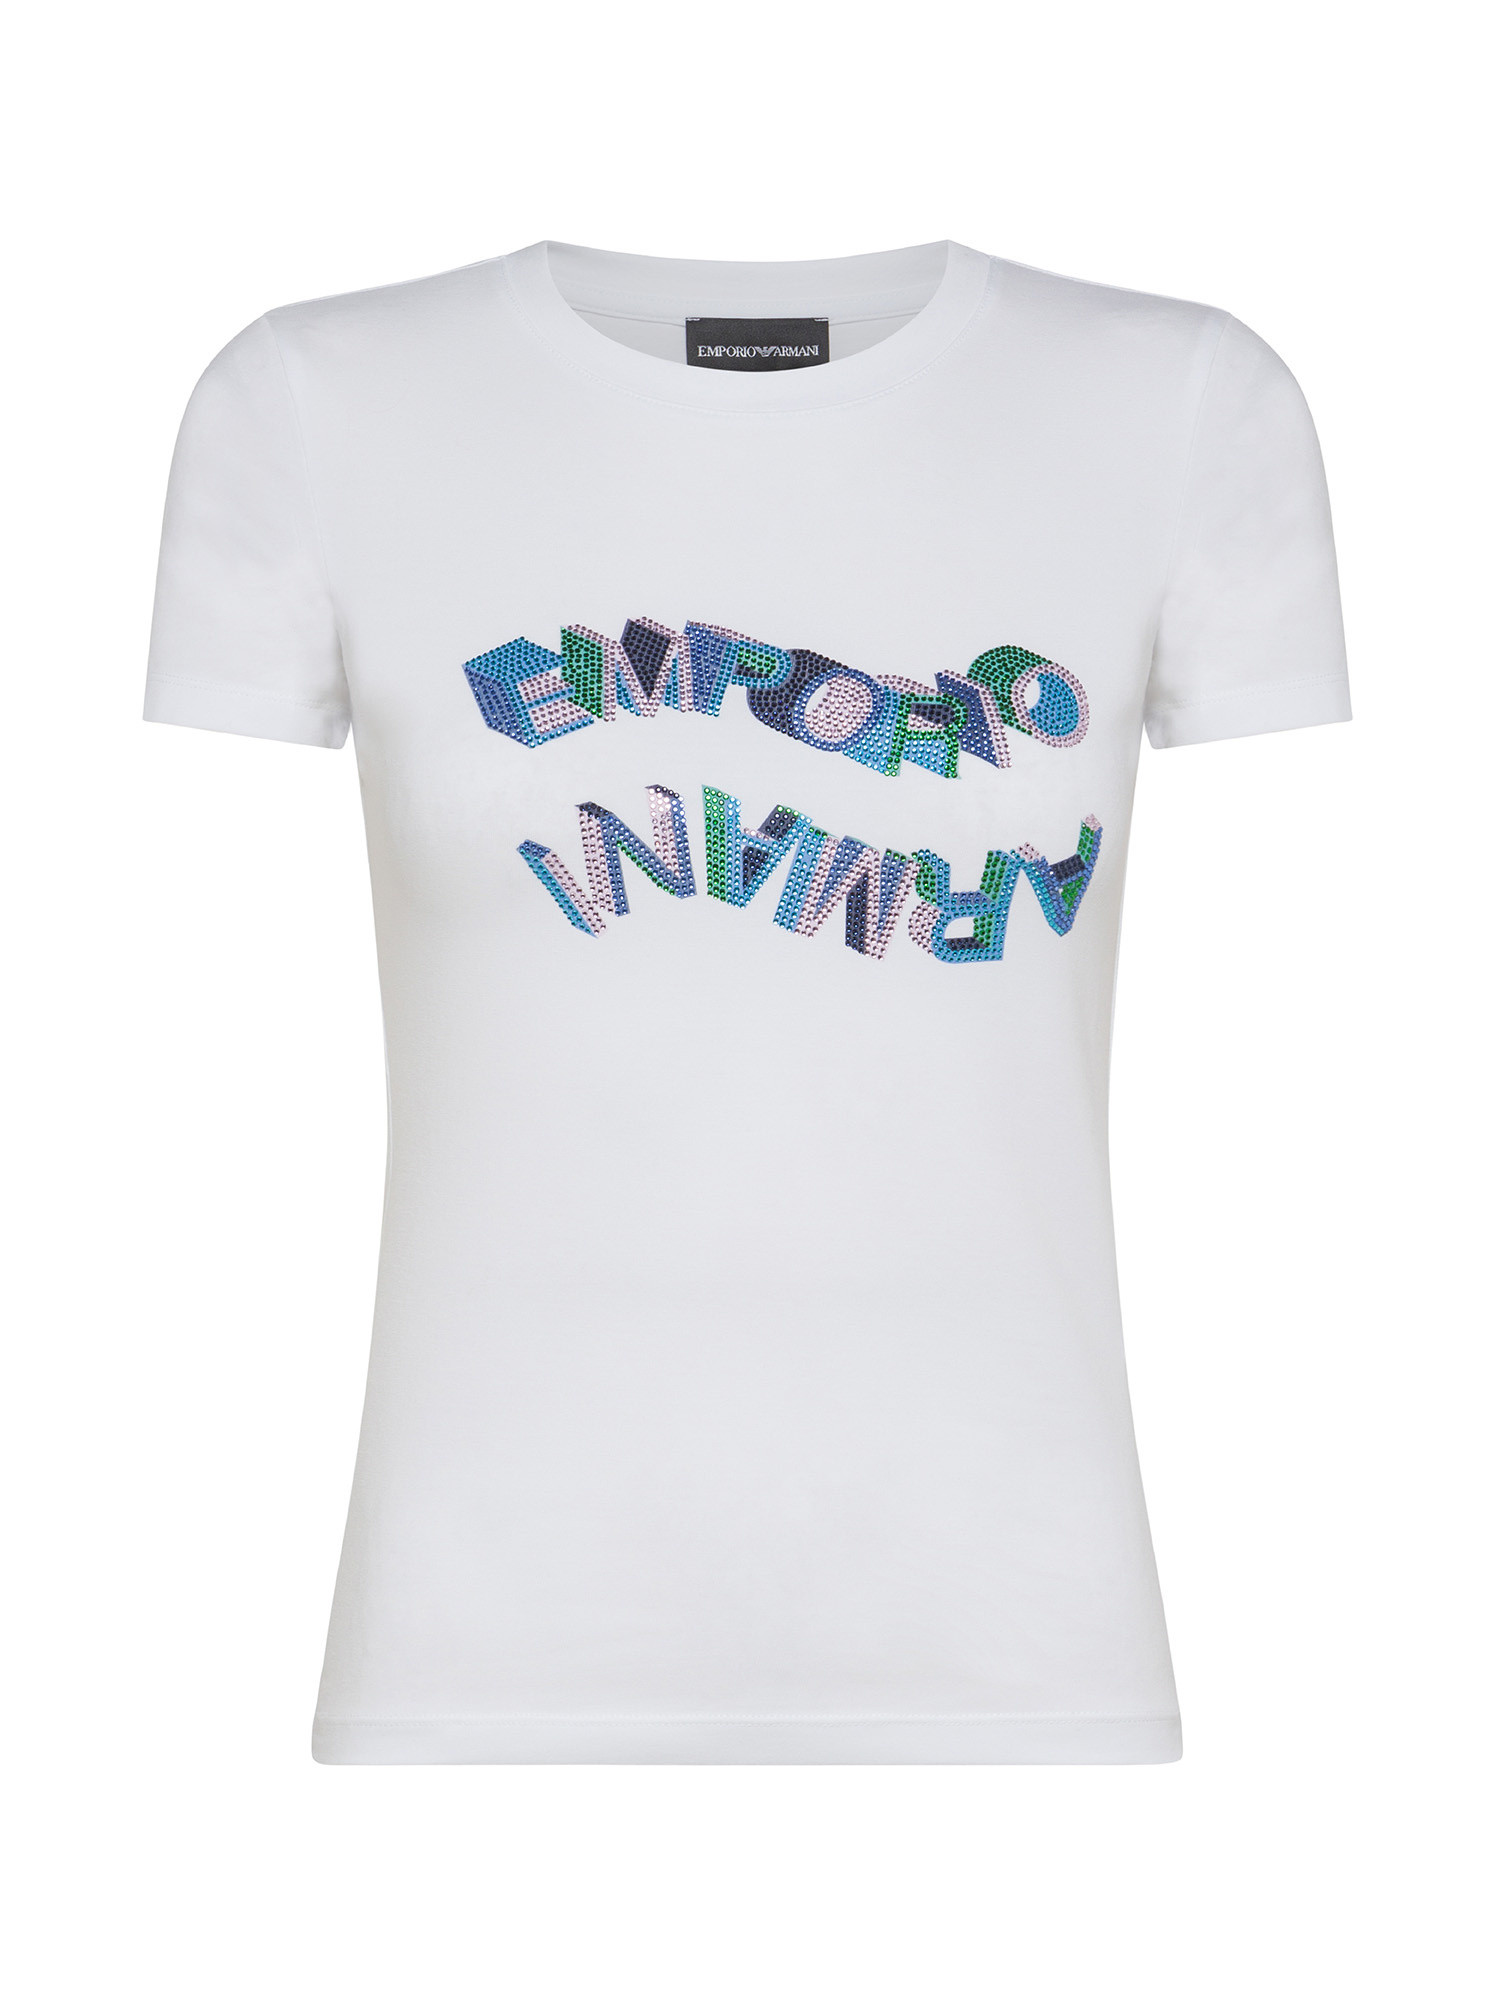 Emporio Armani - T-shirt with rhinestone logo, White, large image number 0